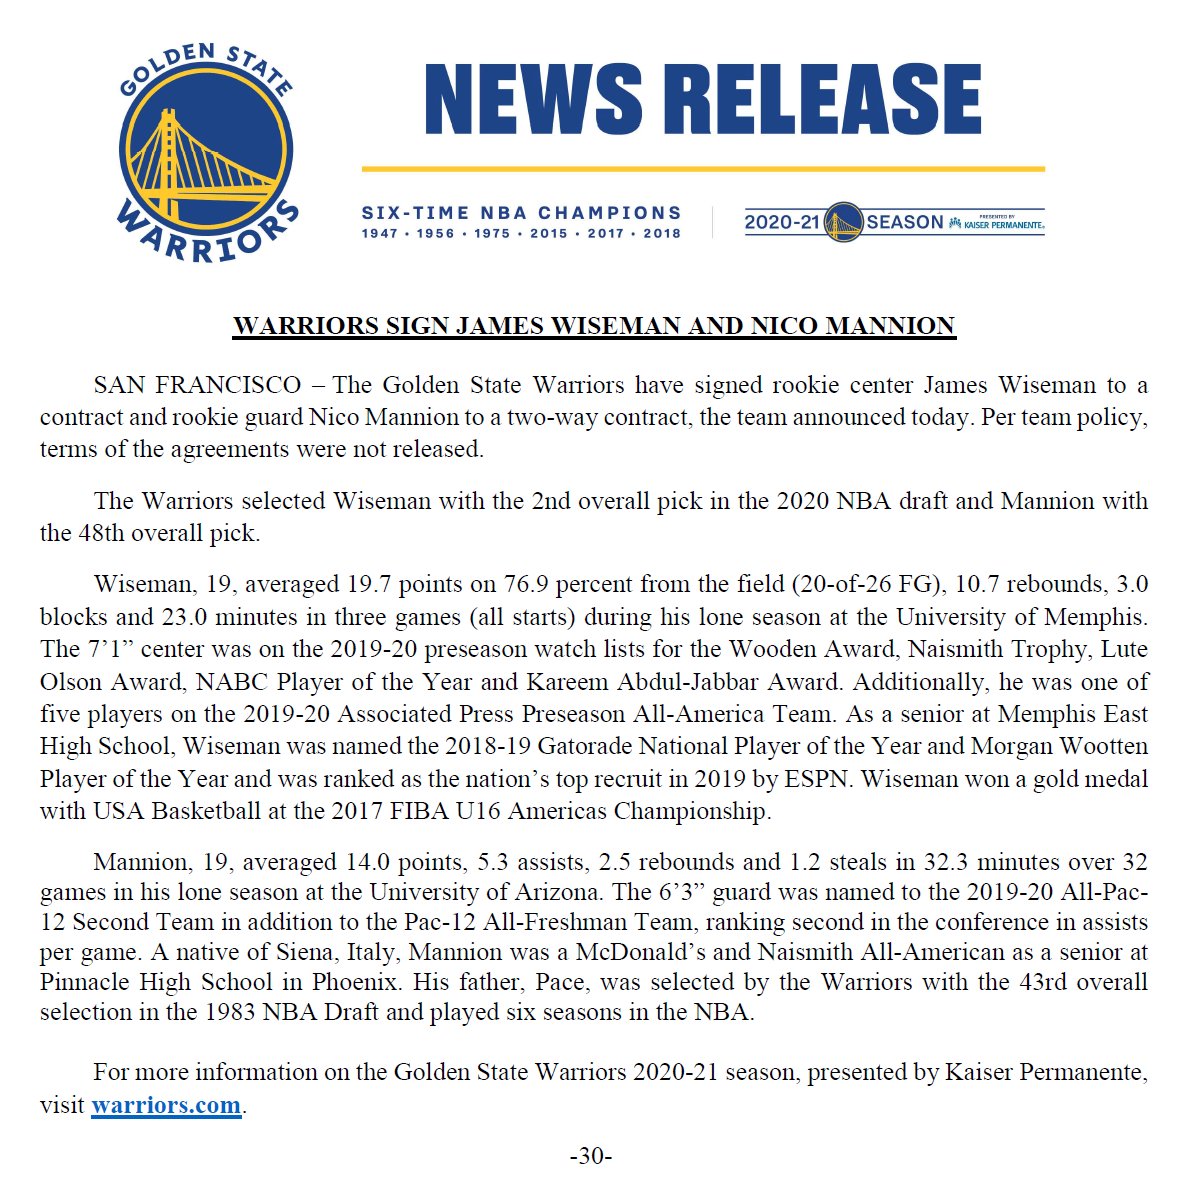 James Wiseman, Nico Mannion receive Golden State Warriors' welcome